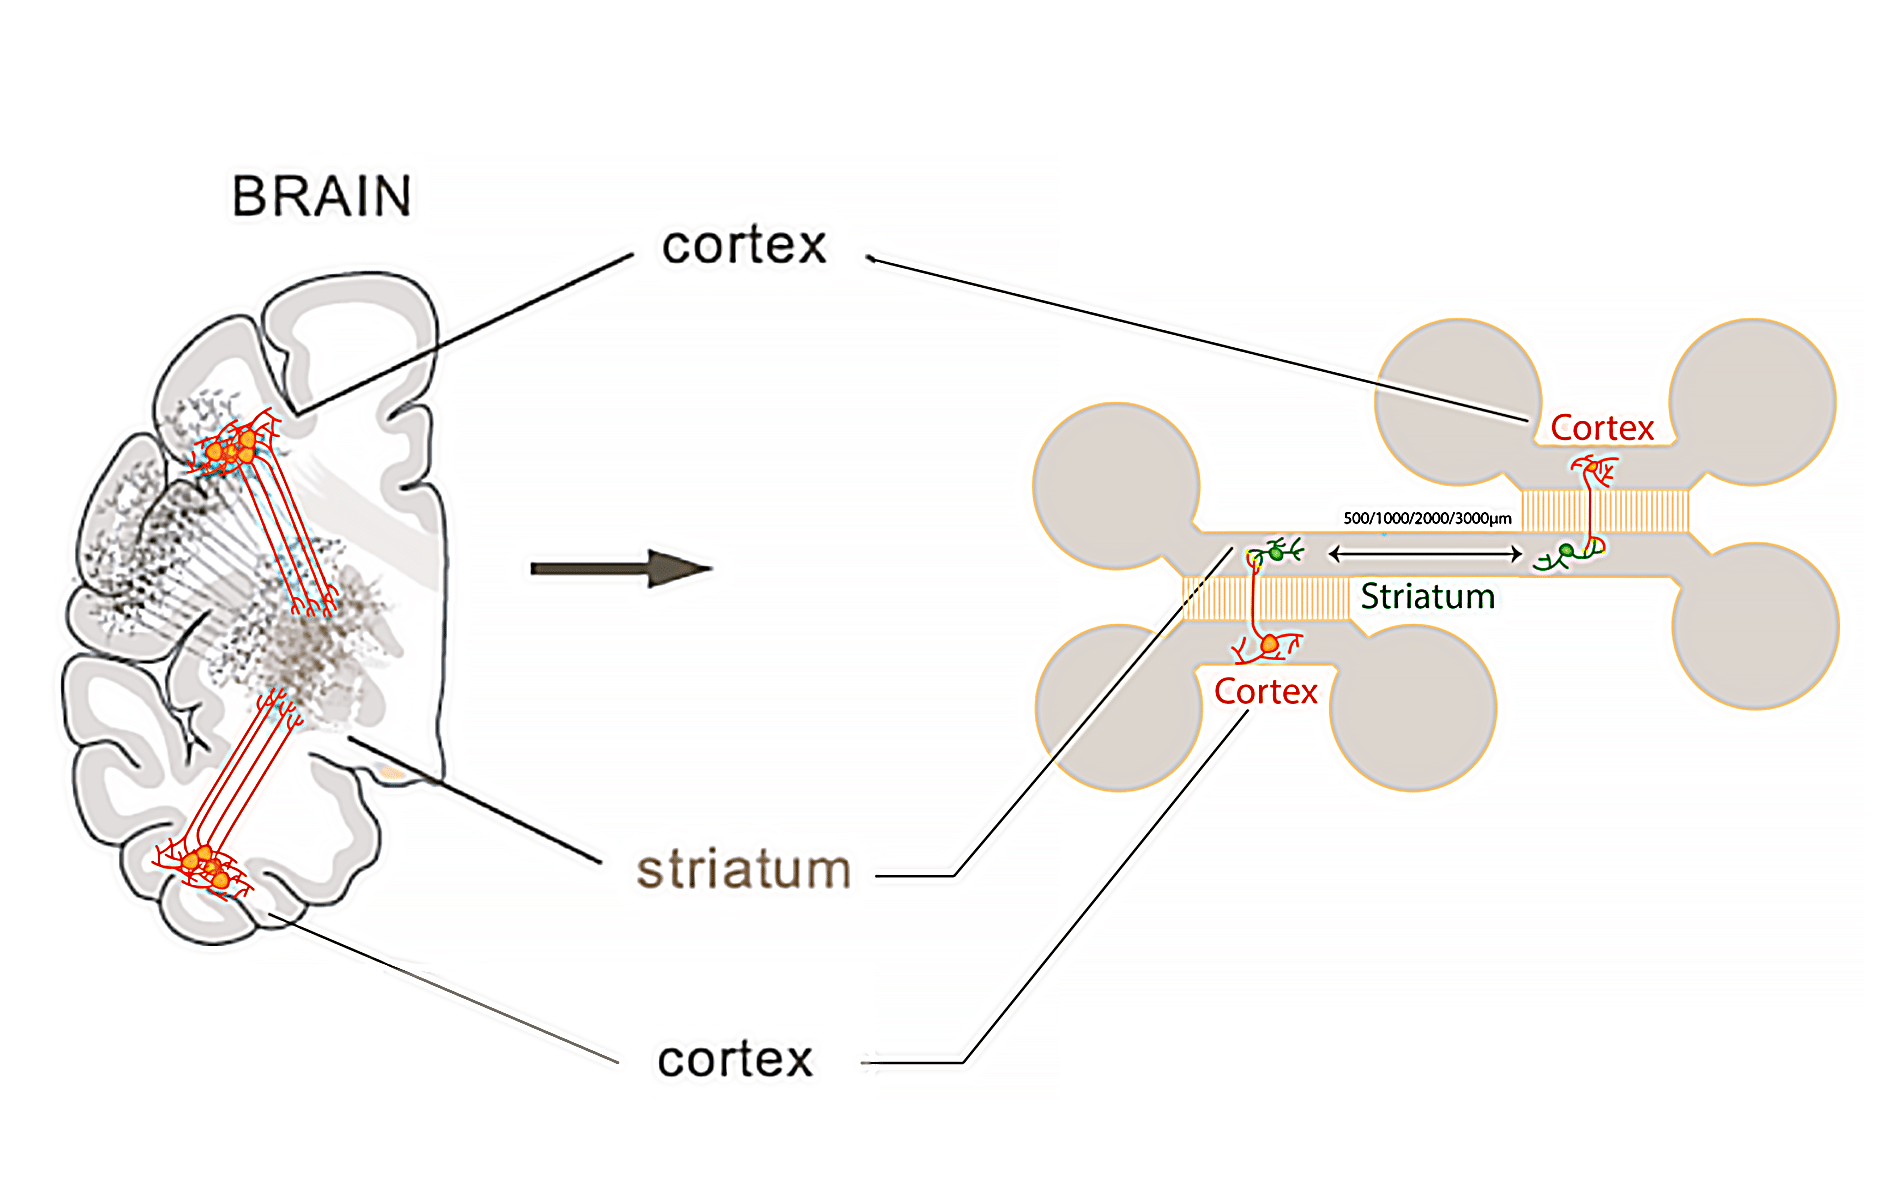 Microfluidic chip illustration for neuron calcium imaging